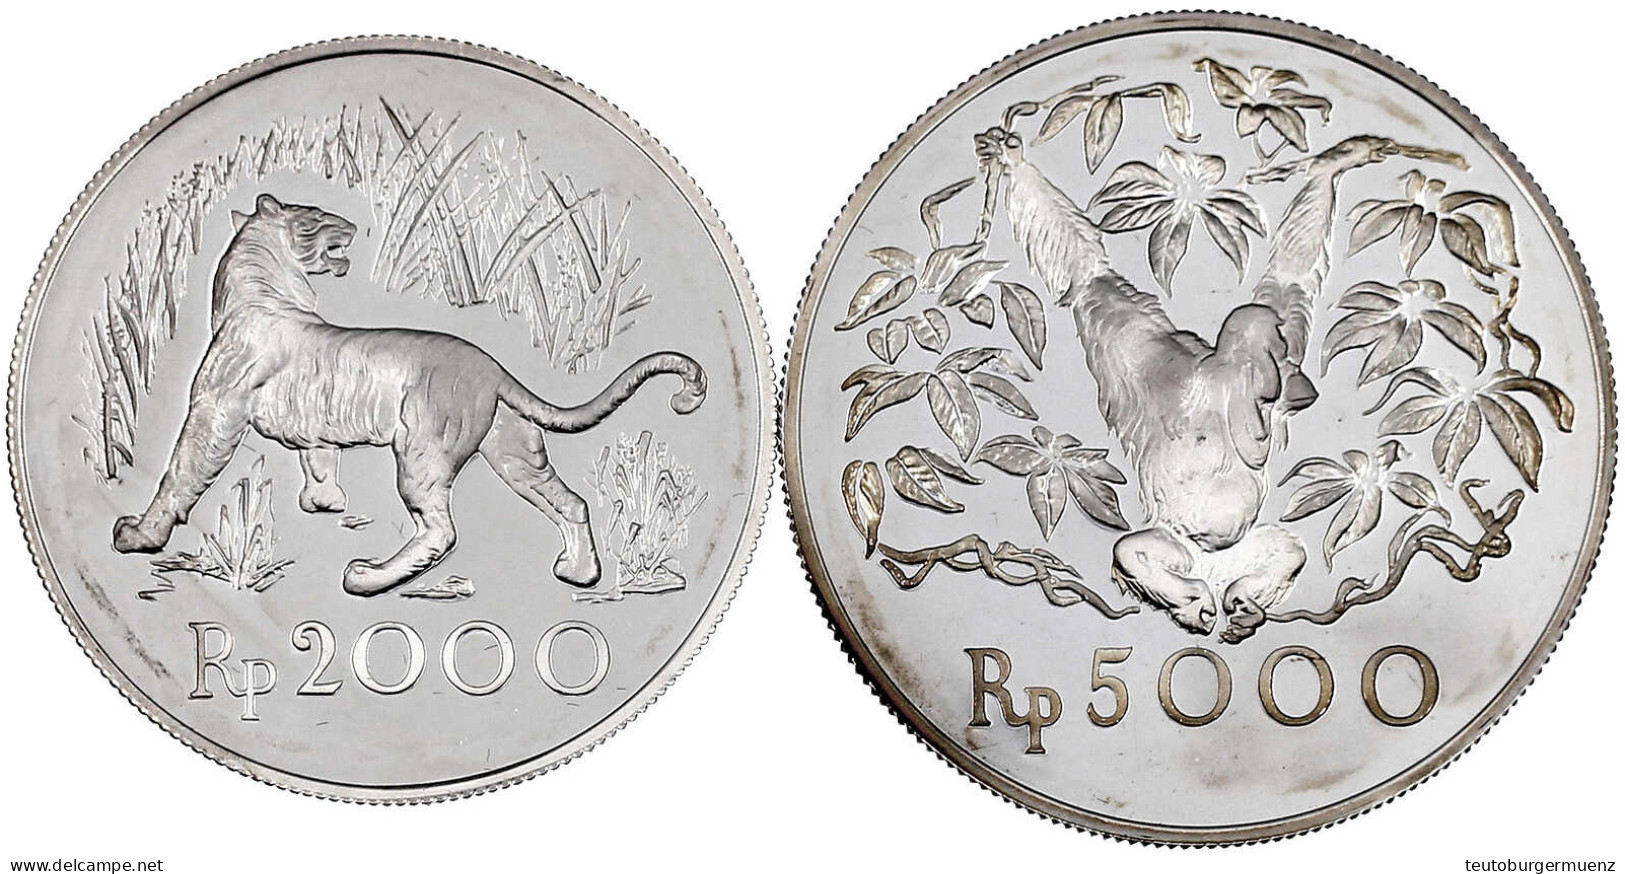 2 Silbermünzen: 2000 Und 5000 Rupien 1974. Java Tiger Und Orang-Utan. Polierte Platte. Krause/Mishler 39 Und 40a. - Indonésie